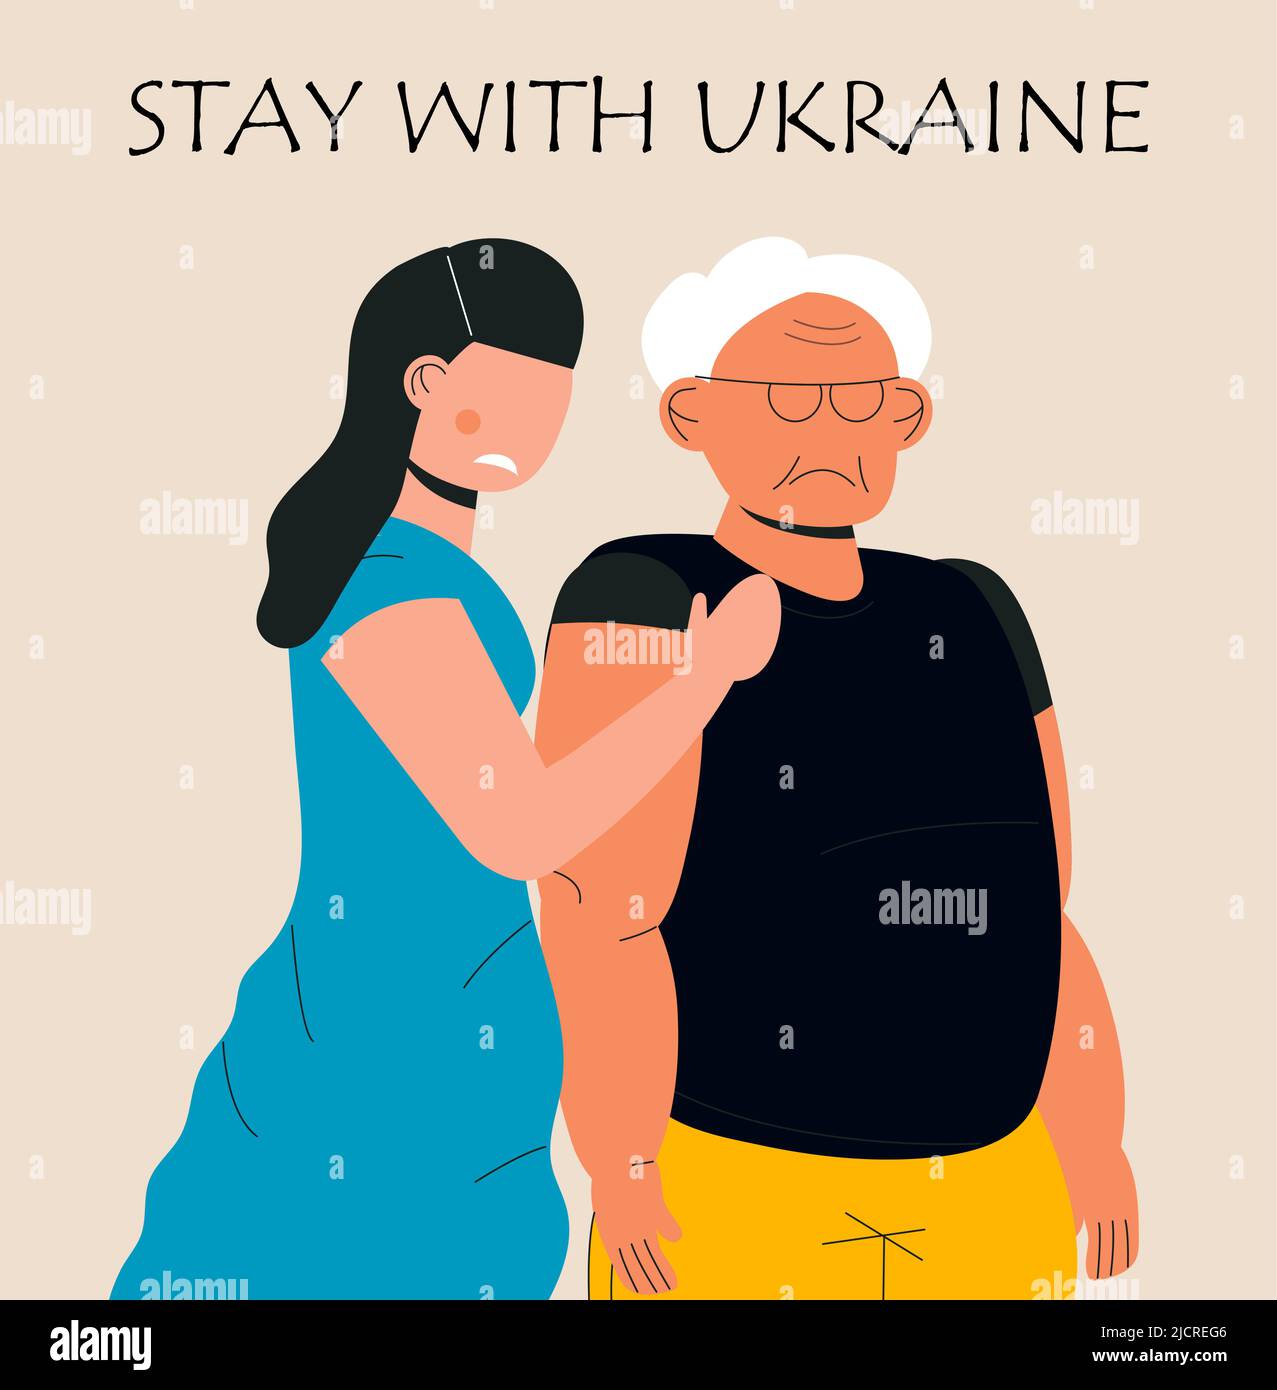 Traurige Menschen in Kleidung Ukrainische Farben Flagge im Krieg, unterstützen Ukraine Vektor-Banner für Web, Poster. Traurige Frau bittet um Unterstützung für ihr Land. Speichern und helfen Stock Vektor